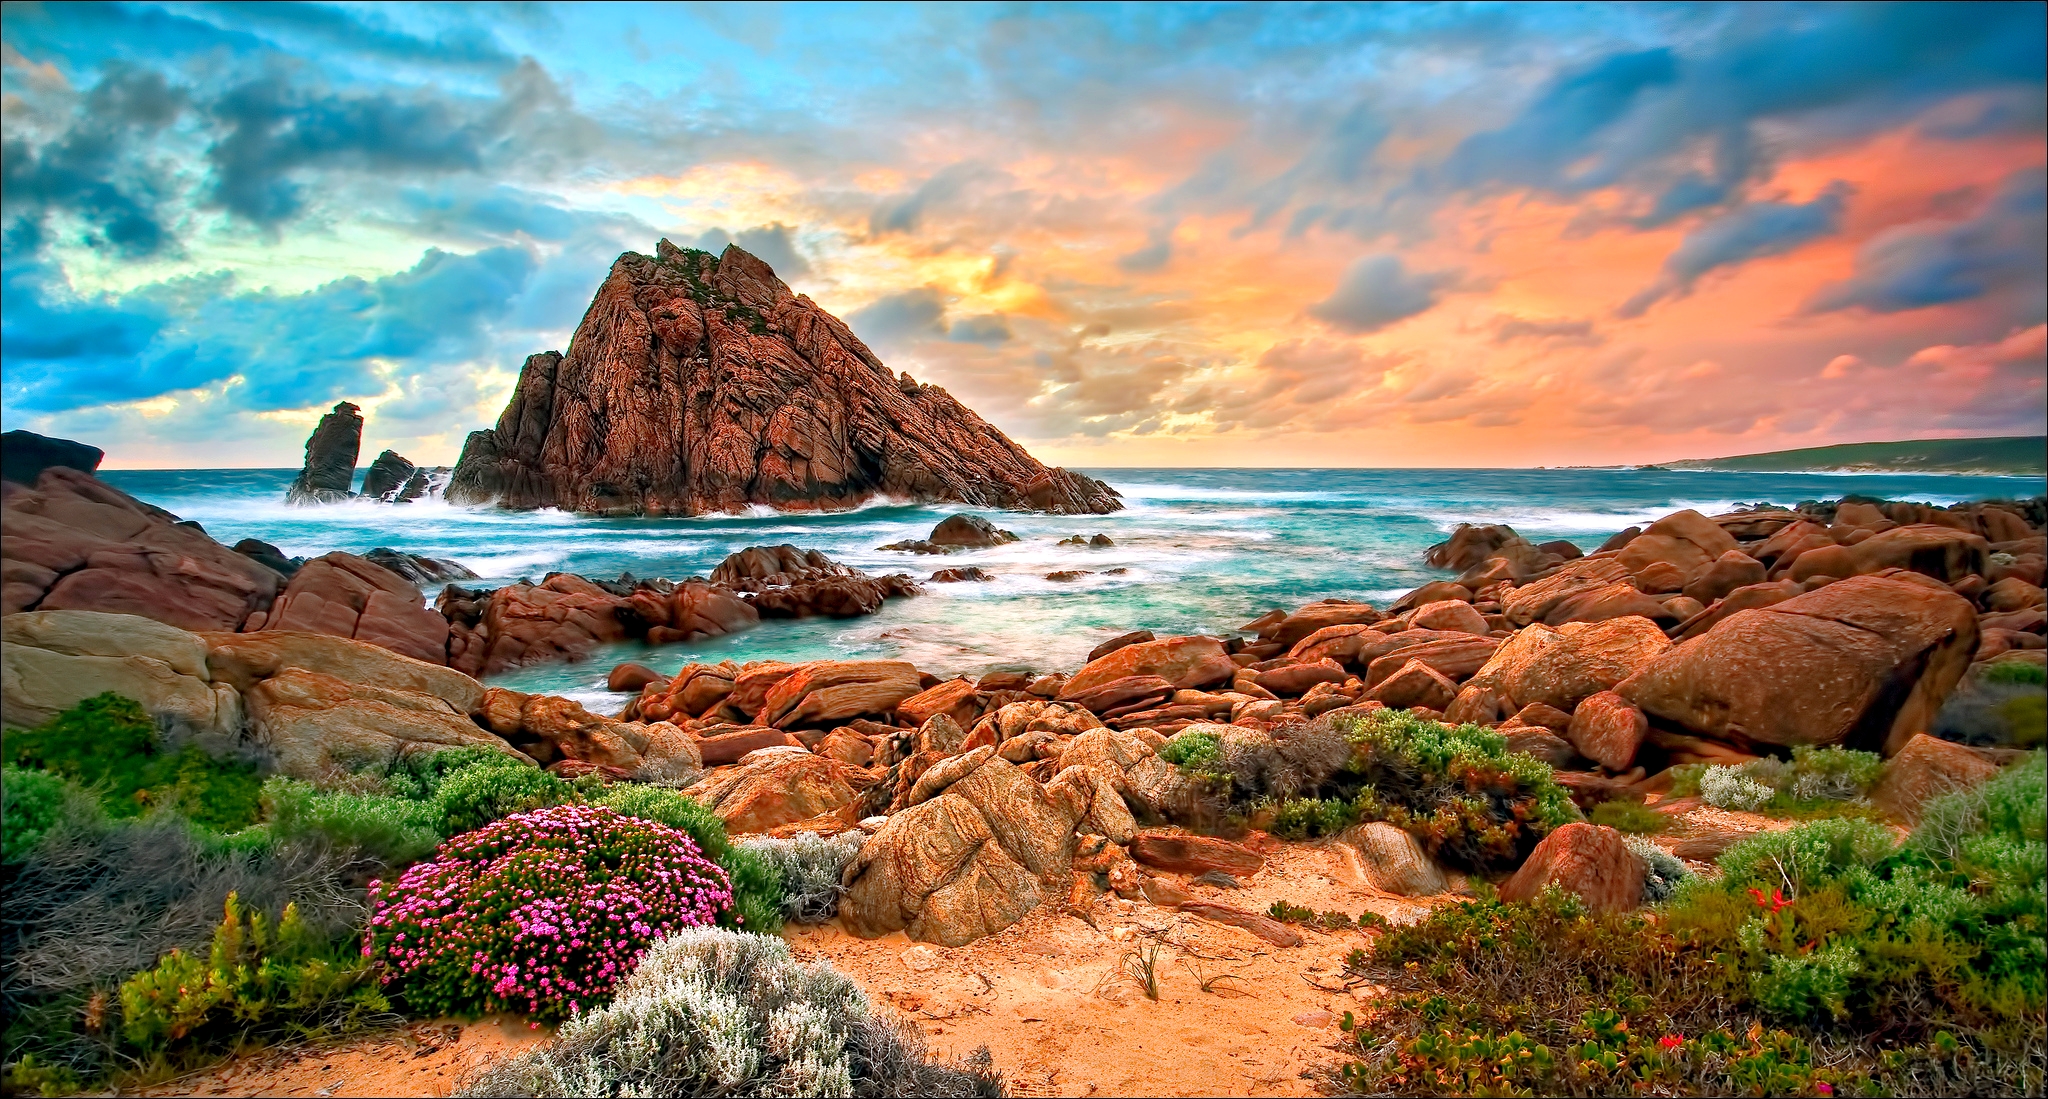 Descarga gratuita de fondo de pantalla para móvil de Naturaleza, Playa, Costa, Océano, Australia, Atardecer, Tierra/naturaleza.